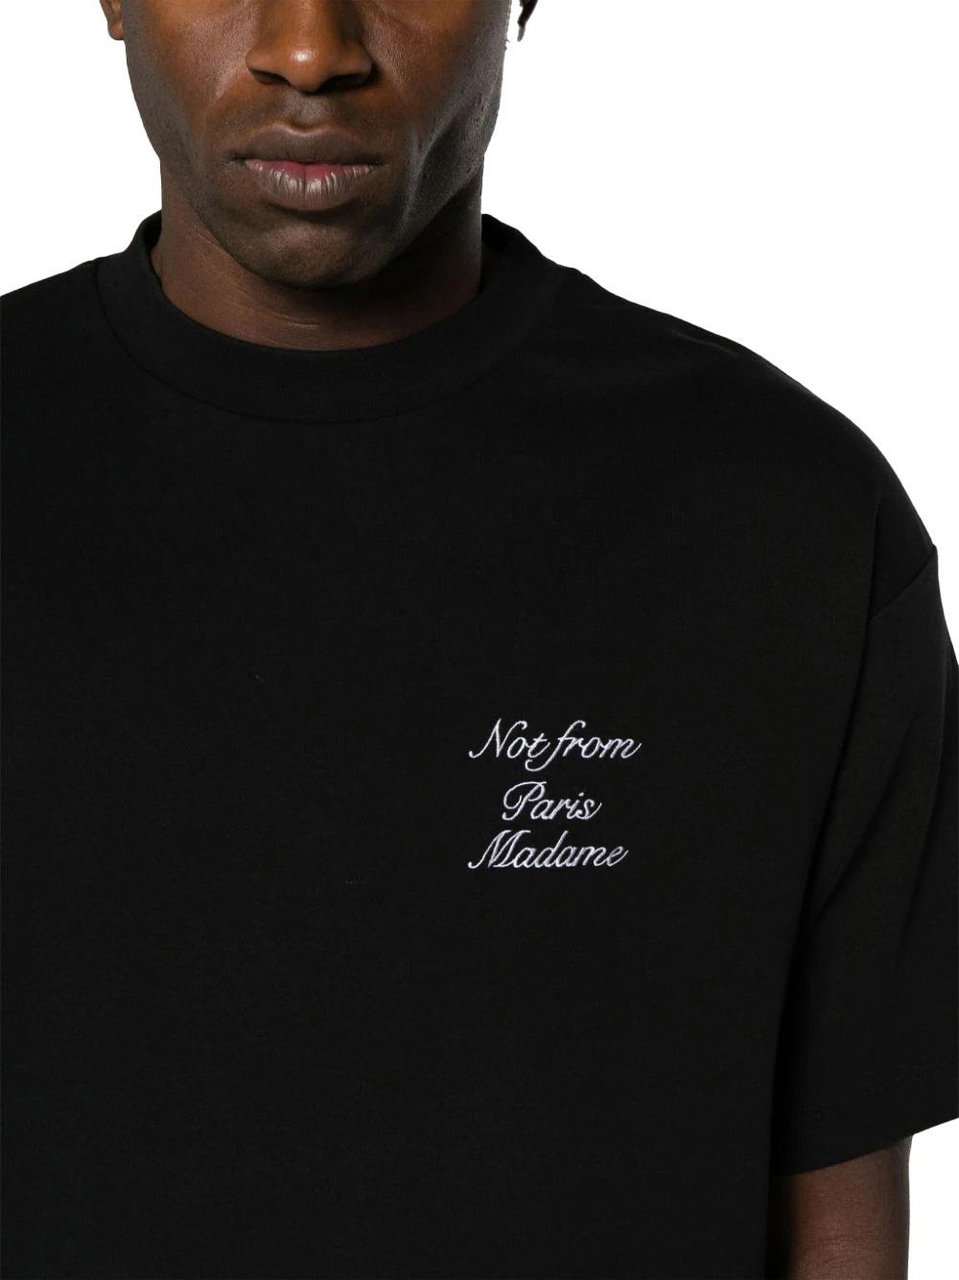 Drôle de Monsieur le t-shirt slogan cursive black Zwart